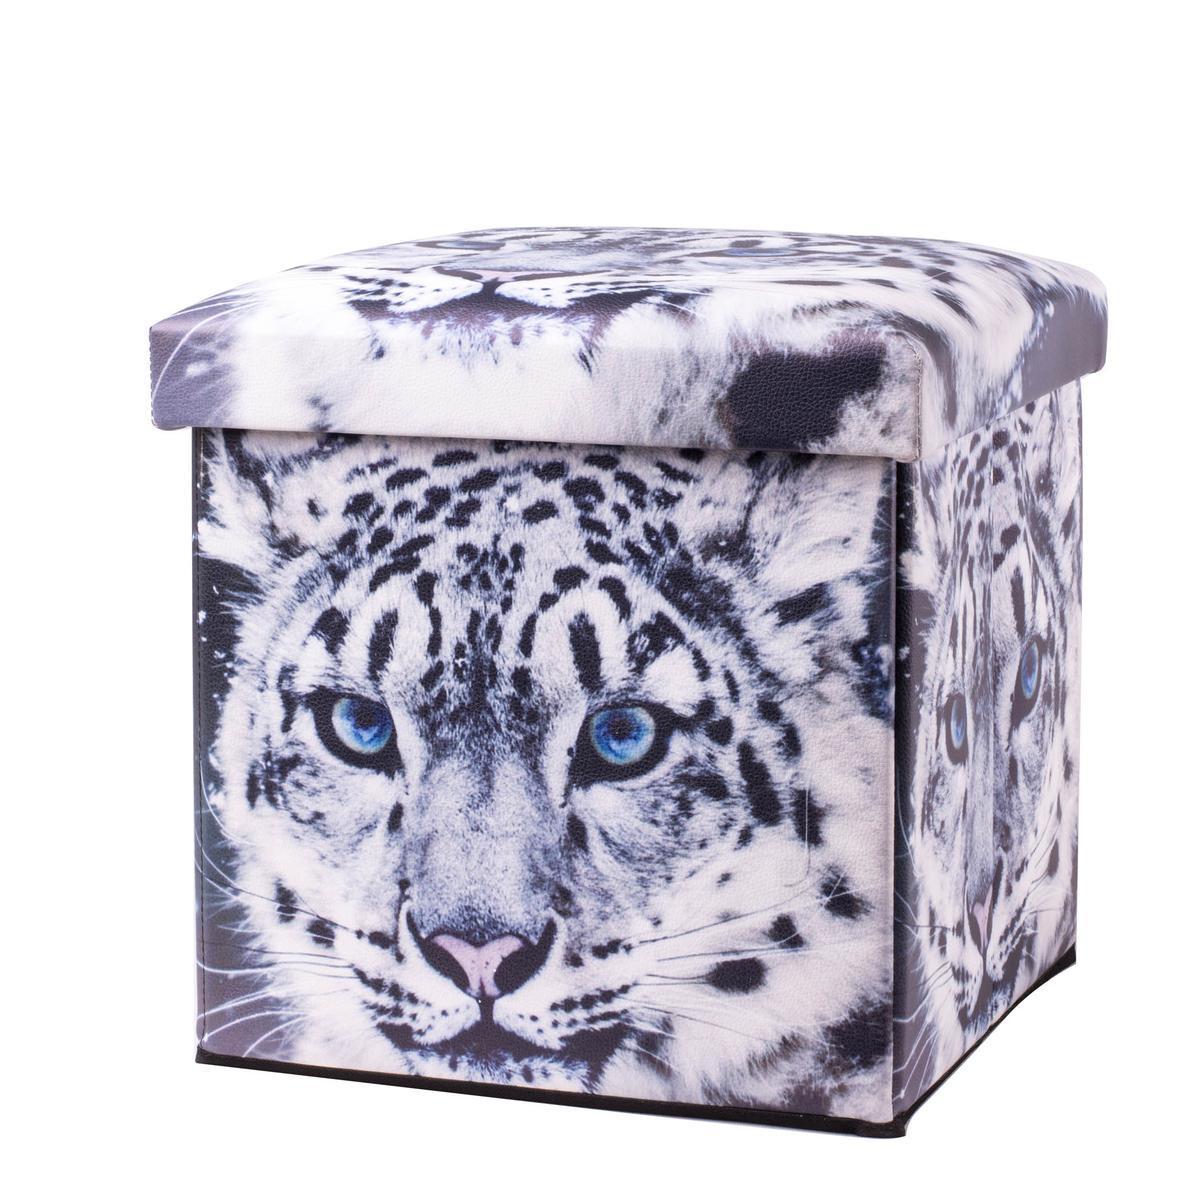 Coffret tabouret tigre en PVC, intissé et MDF - 30 x 30 x 30 cm - Noir et blanc